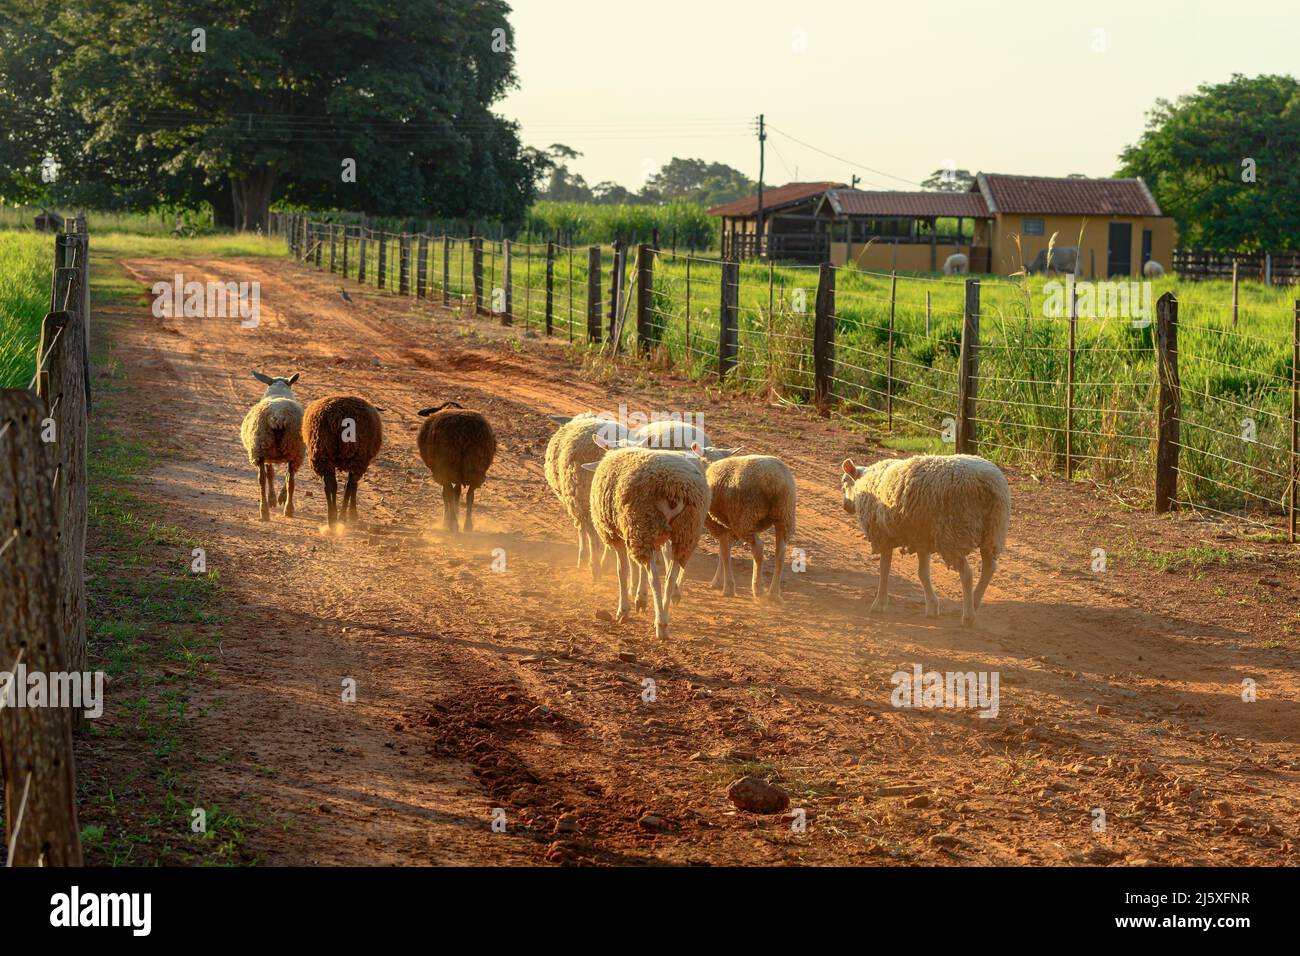 Moutons marchant calmement le long d'une route de terre d'une ferme dans une belle fin d'après-midi. Arrière-plan de la ferme. Banque D'Images